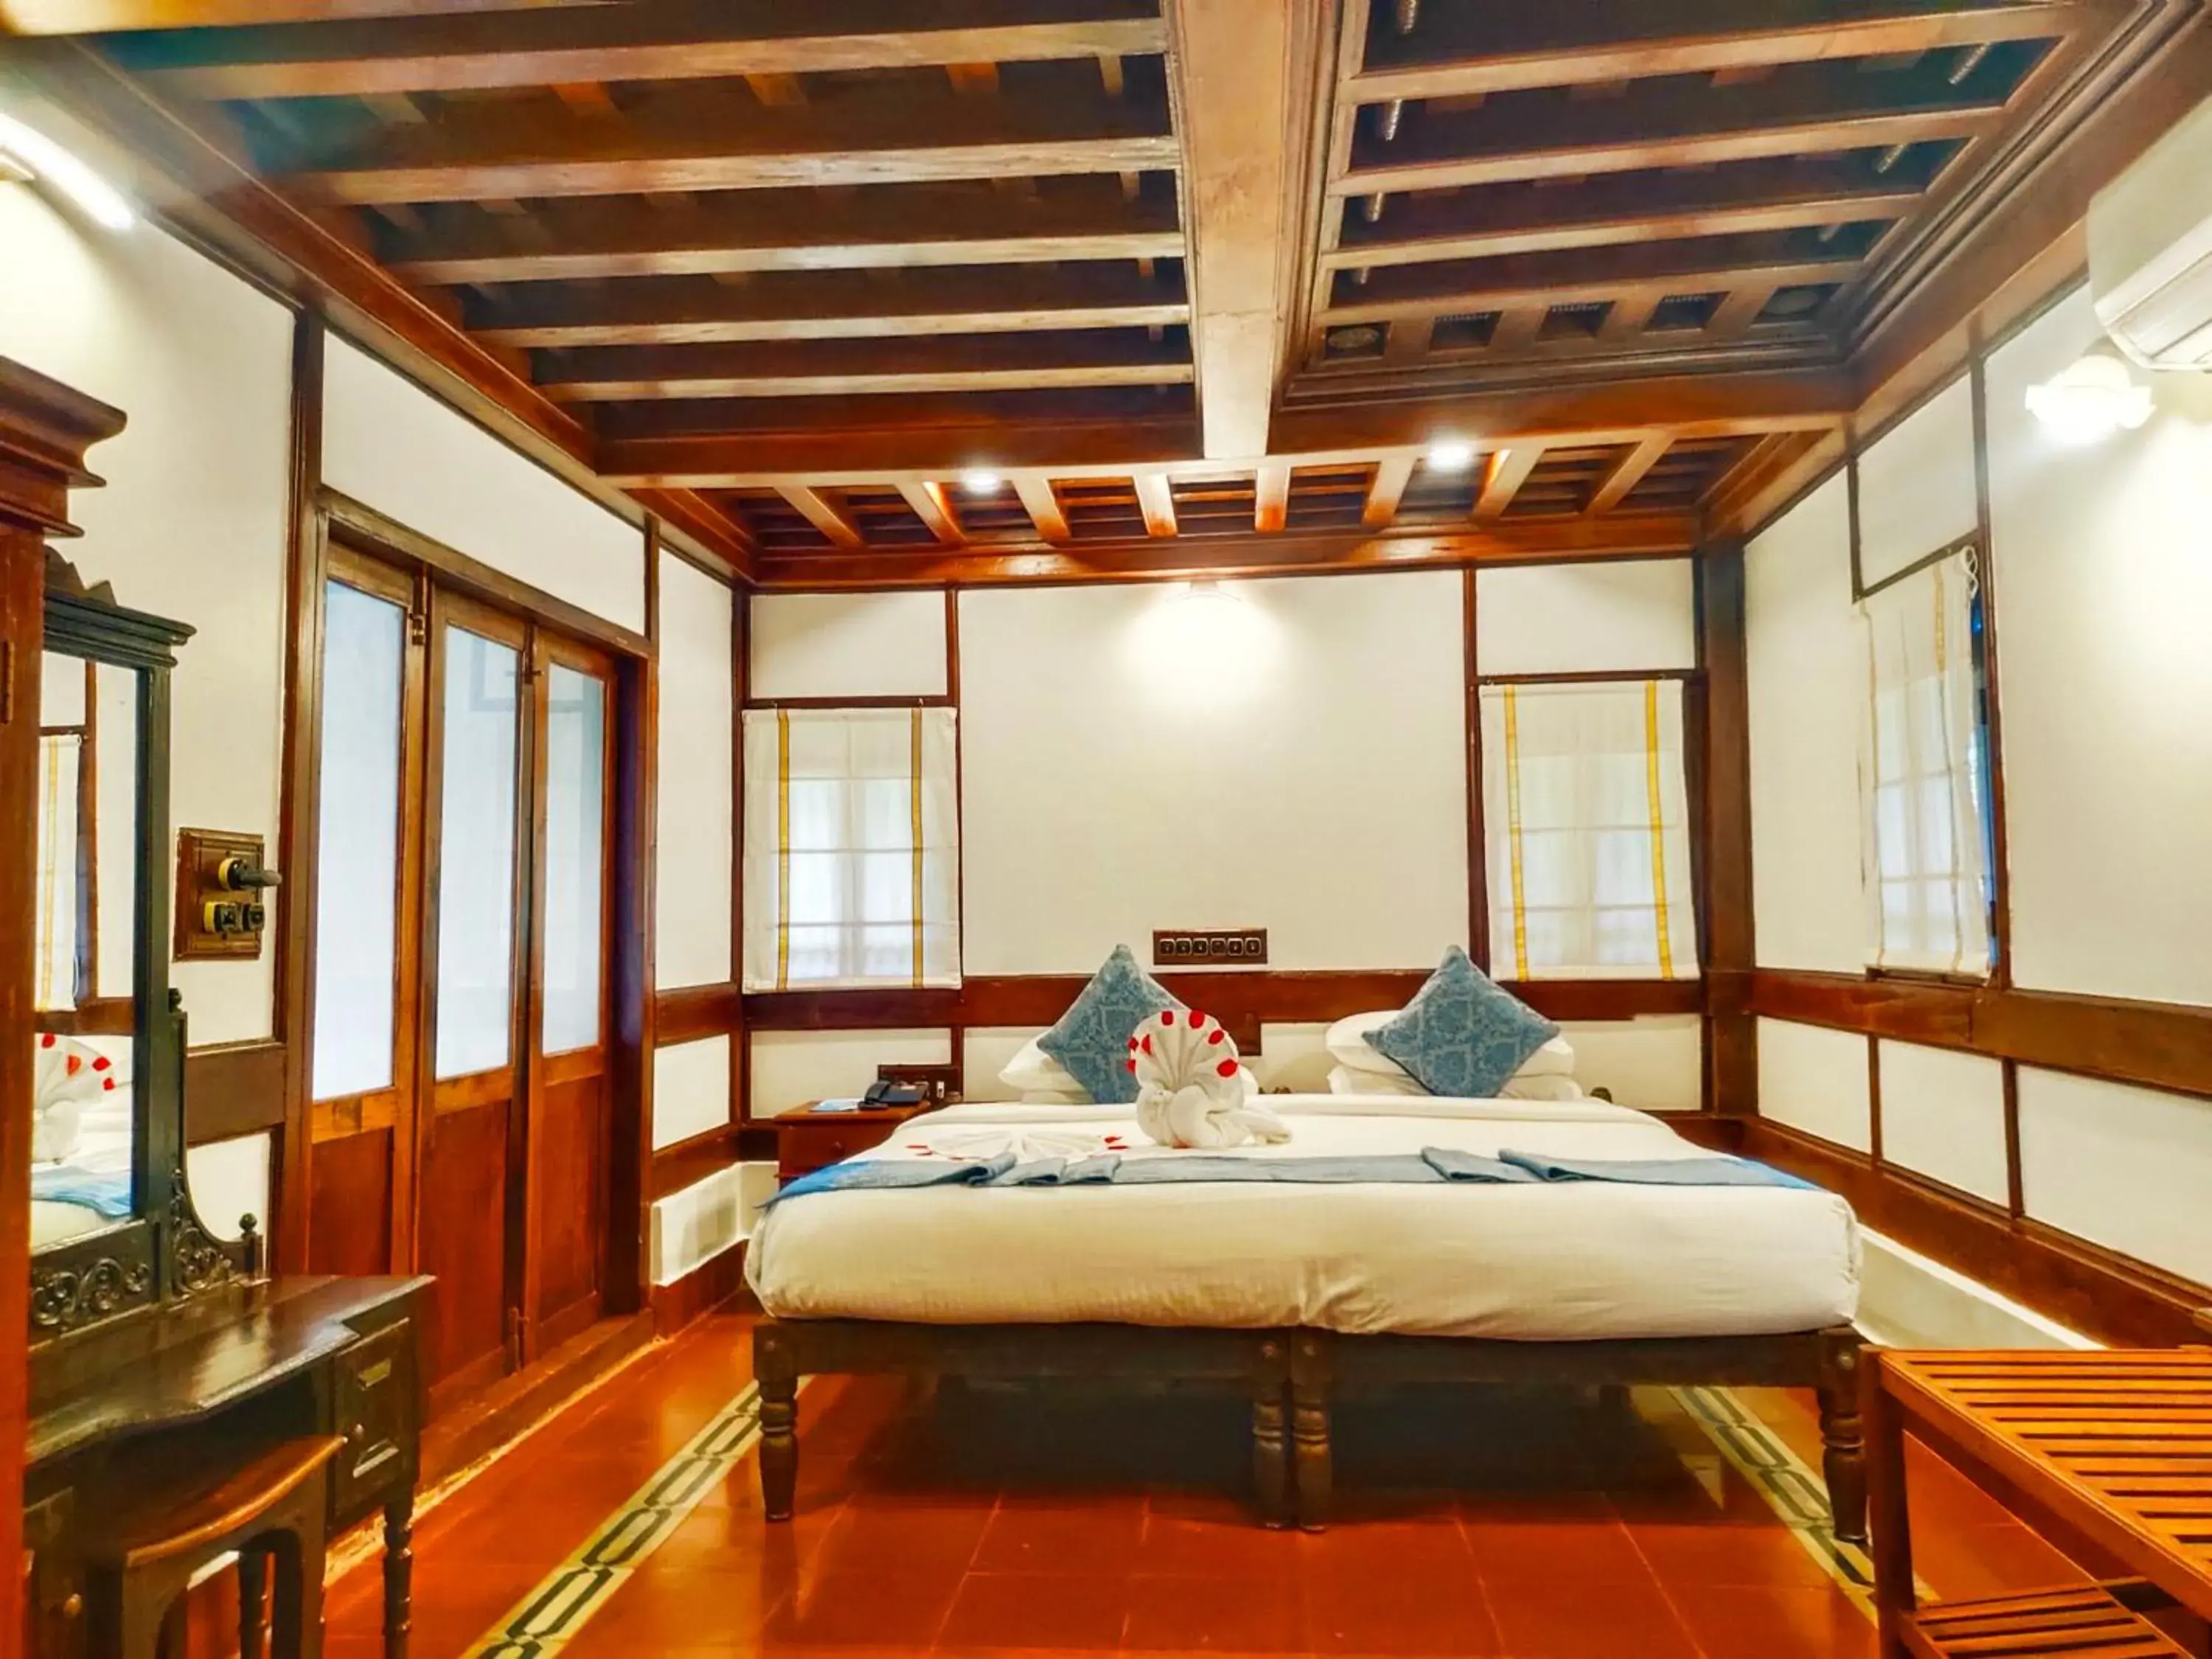 Bedroom in The Travancore Heritage Beach Resort